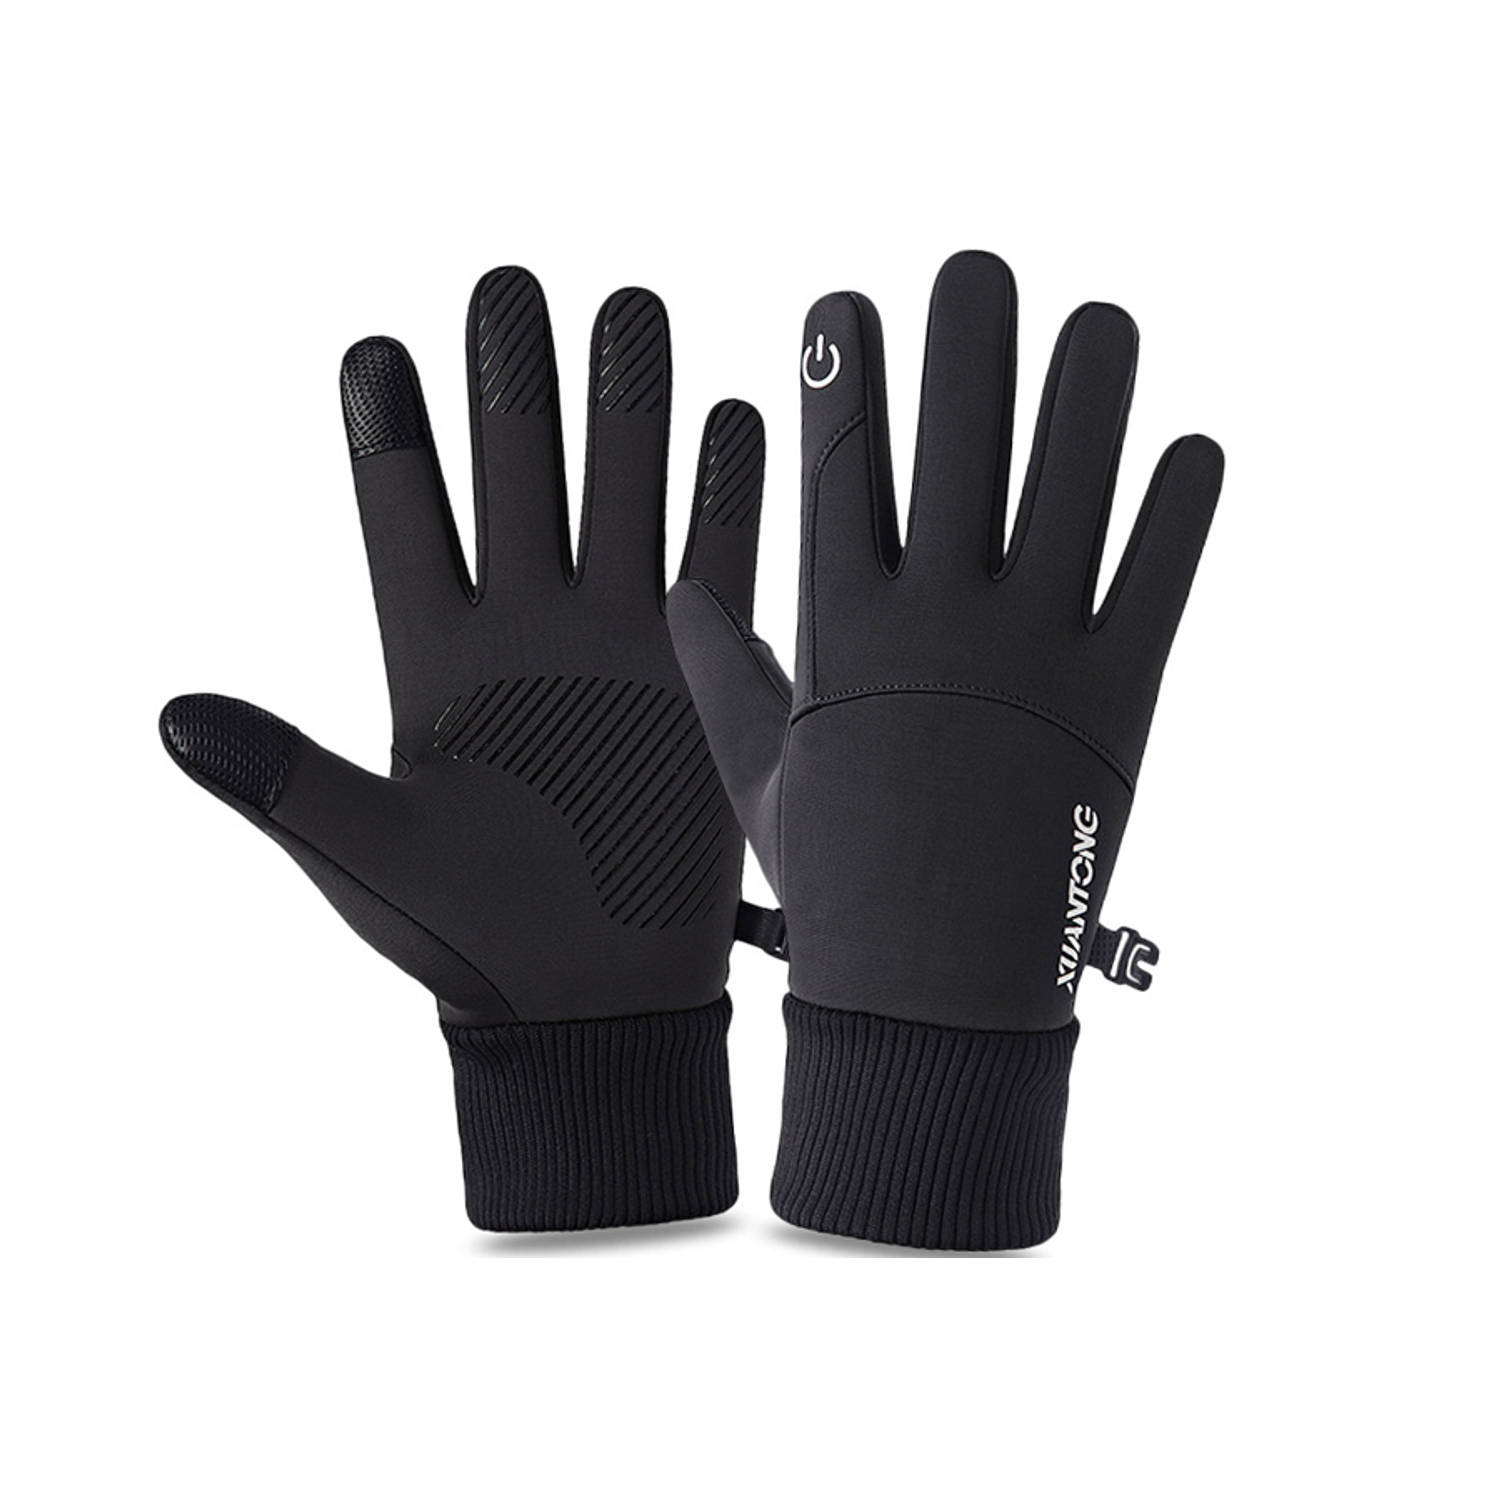 Fleece Handschoenen met Touchscreen bediening – Wind en Waterdicht – Maat M – Zwart